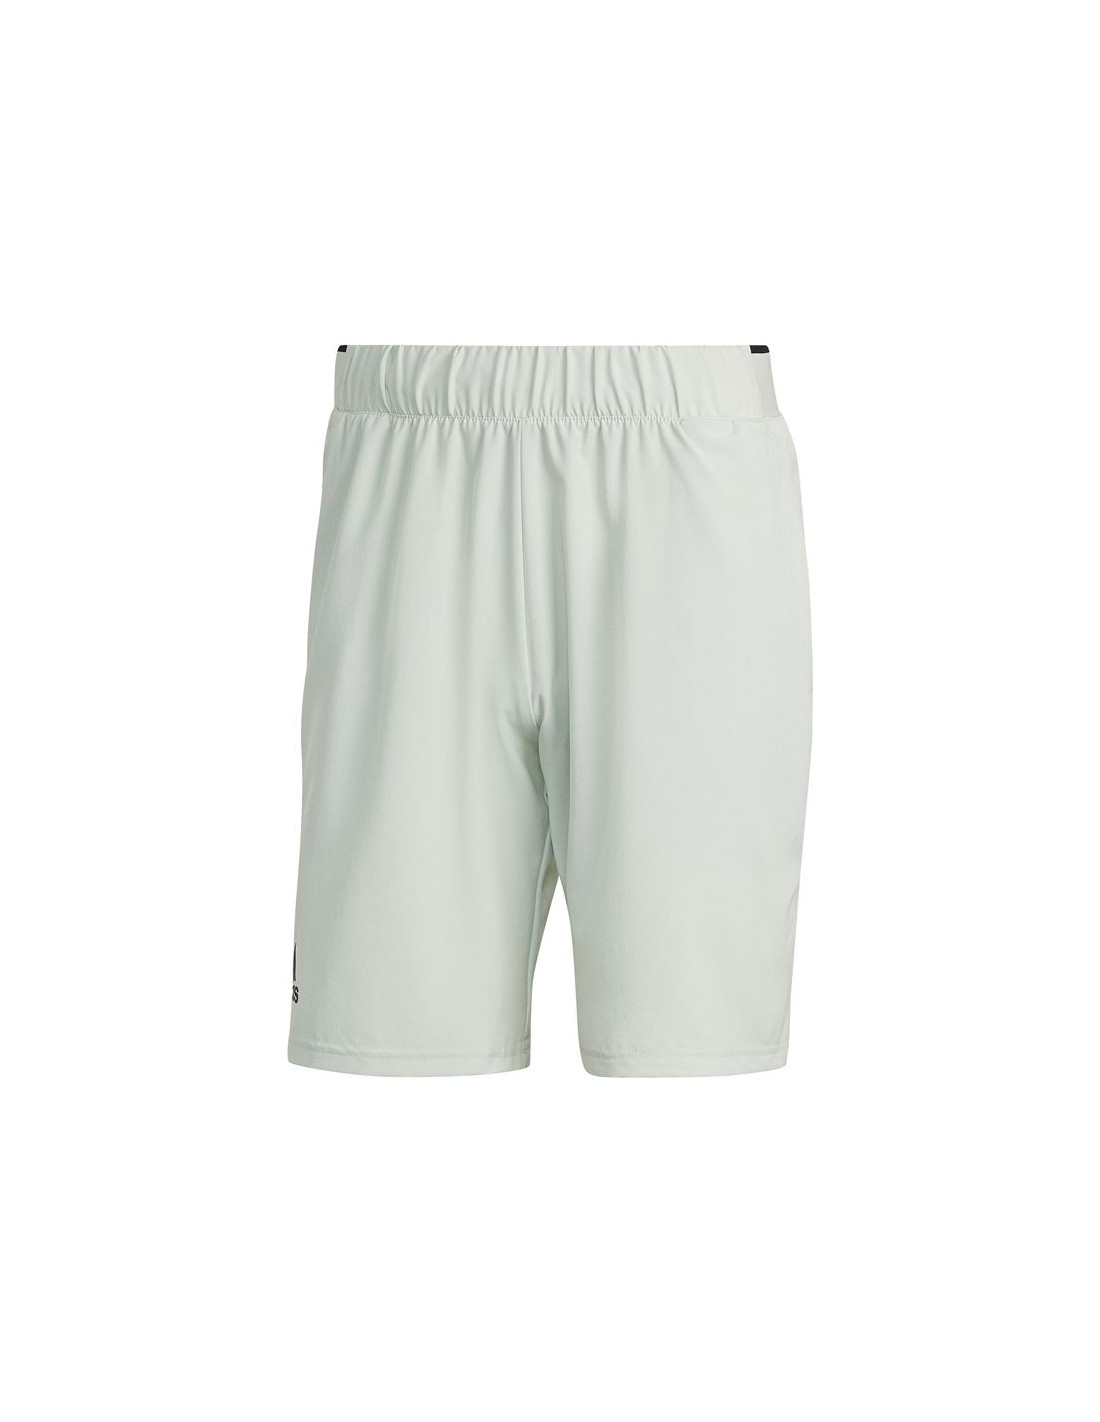 Pantalones de tenis adidas club stretch hombre white